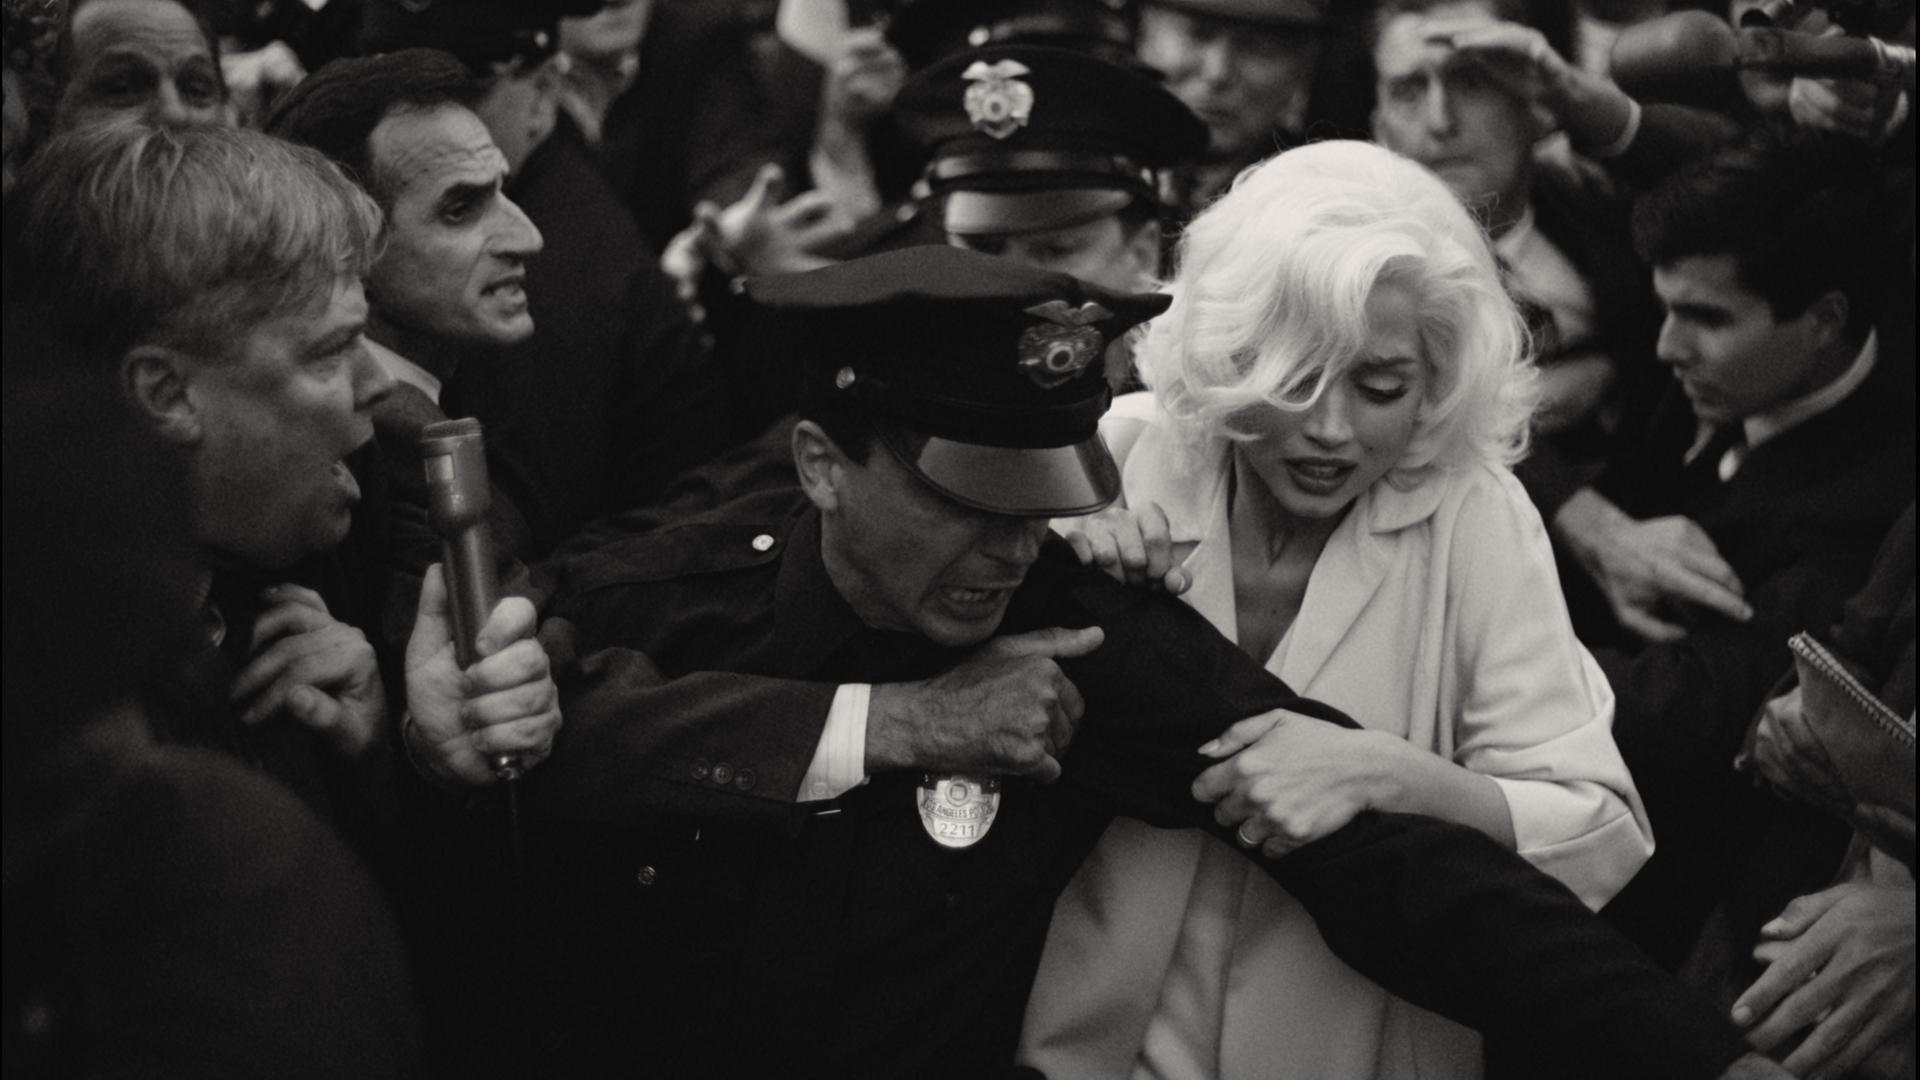 Die Filmszene in Schwarz-Weiß zeigt, wie Marilyn Monroe von einem Polizisten abgeführt wird.